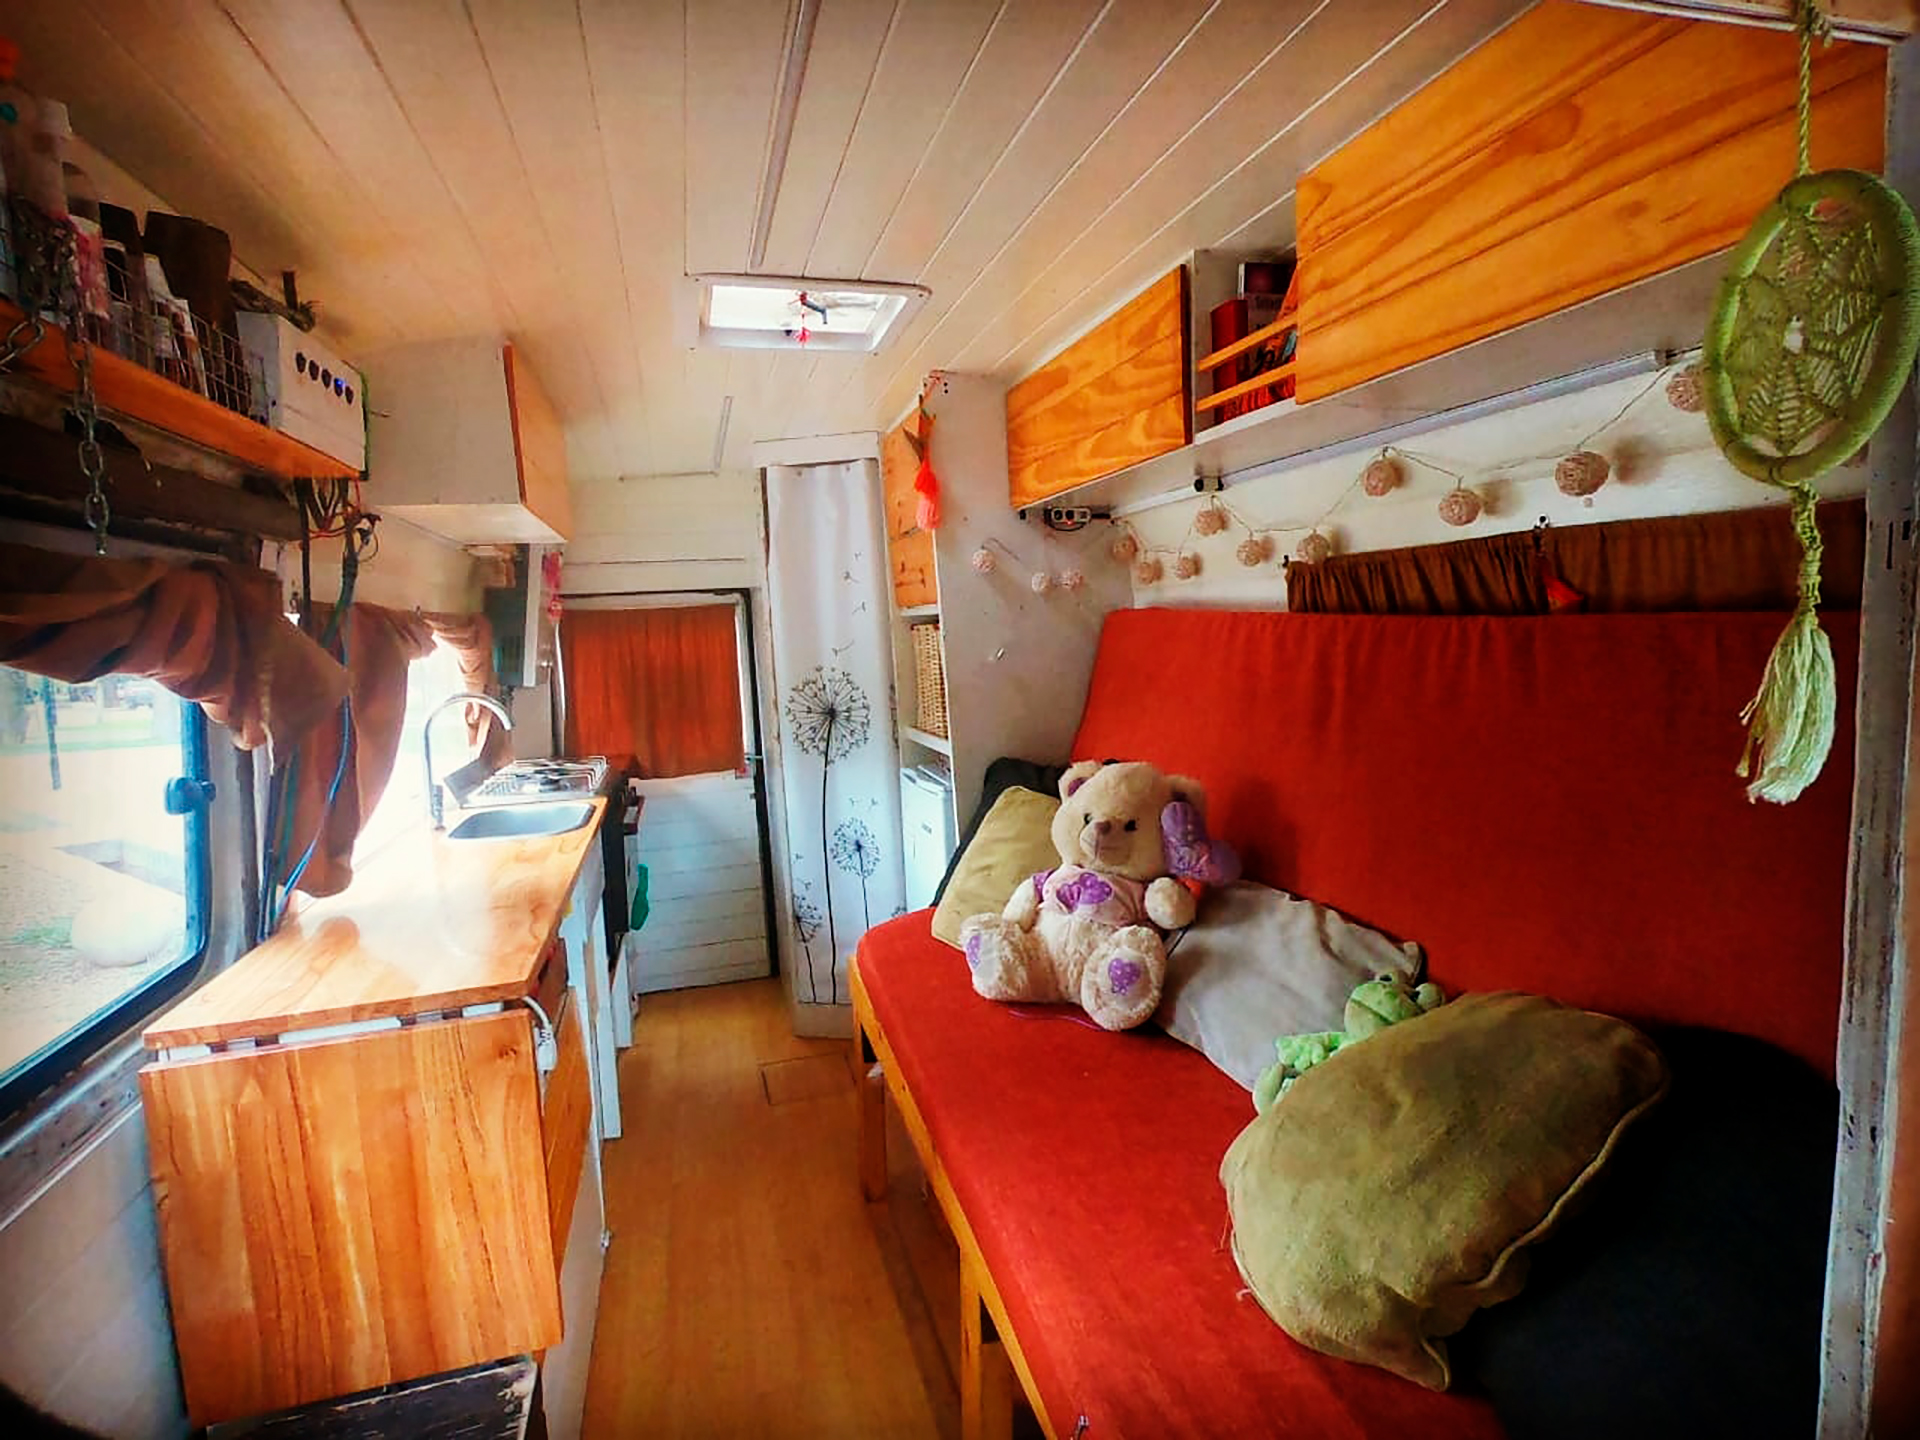 El interior de la furgoneta y ahora hogar de la manada viajera (@manadanomada_)